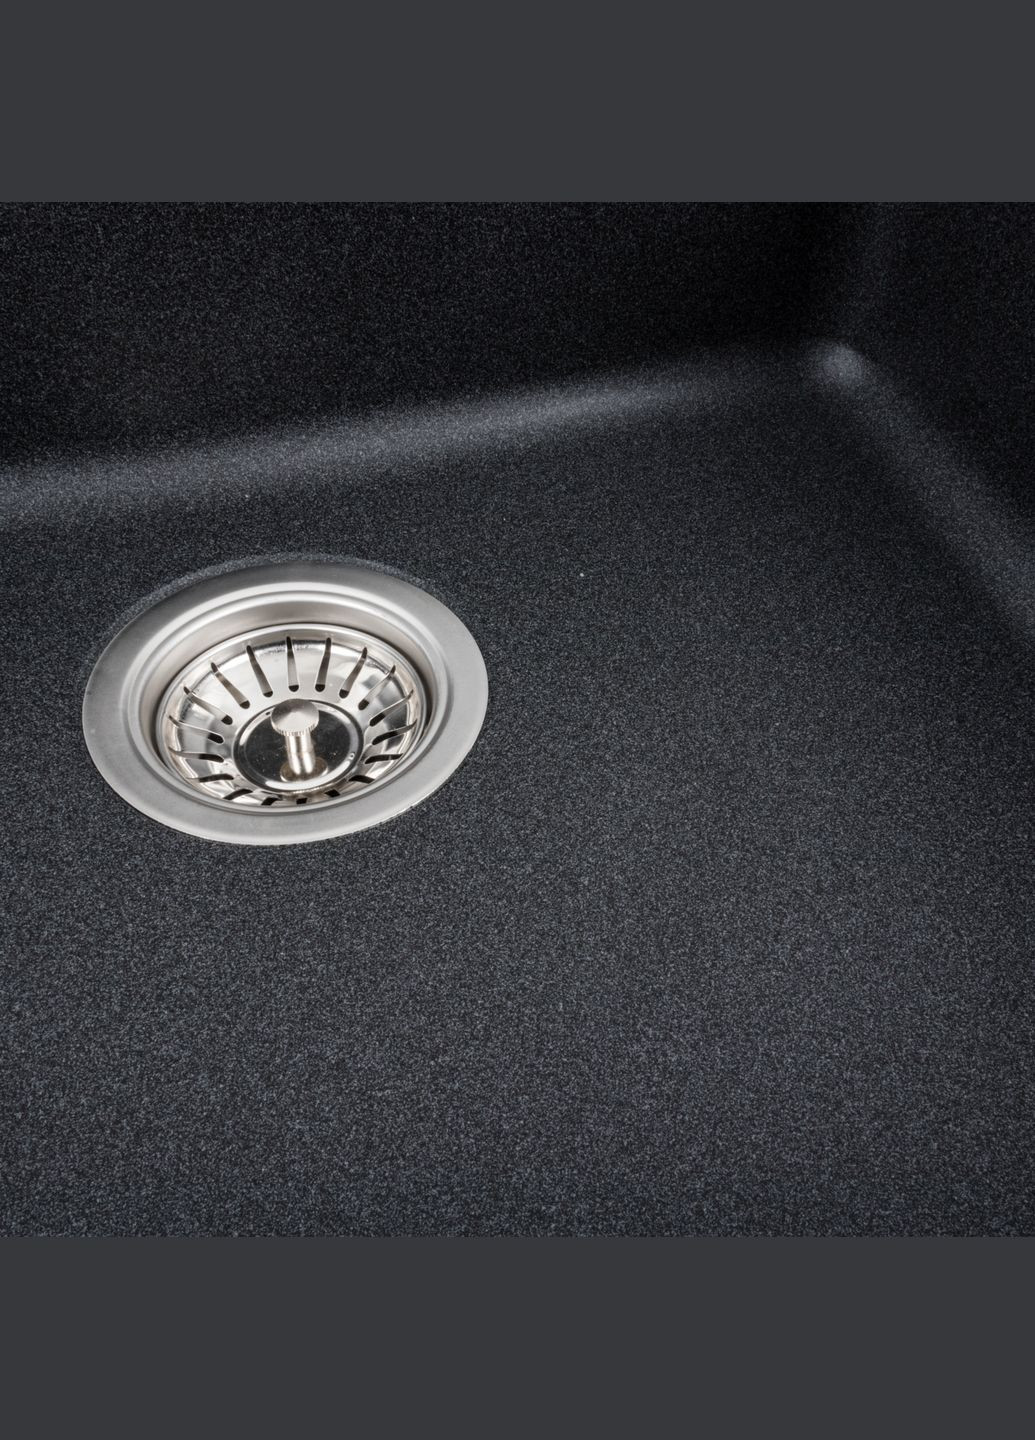 Гранітна мийка для кухні 5852 VESTA матовий Карбон Platinum (269793325)